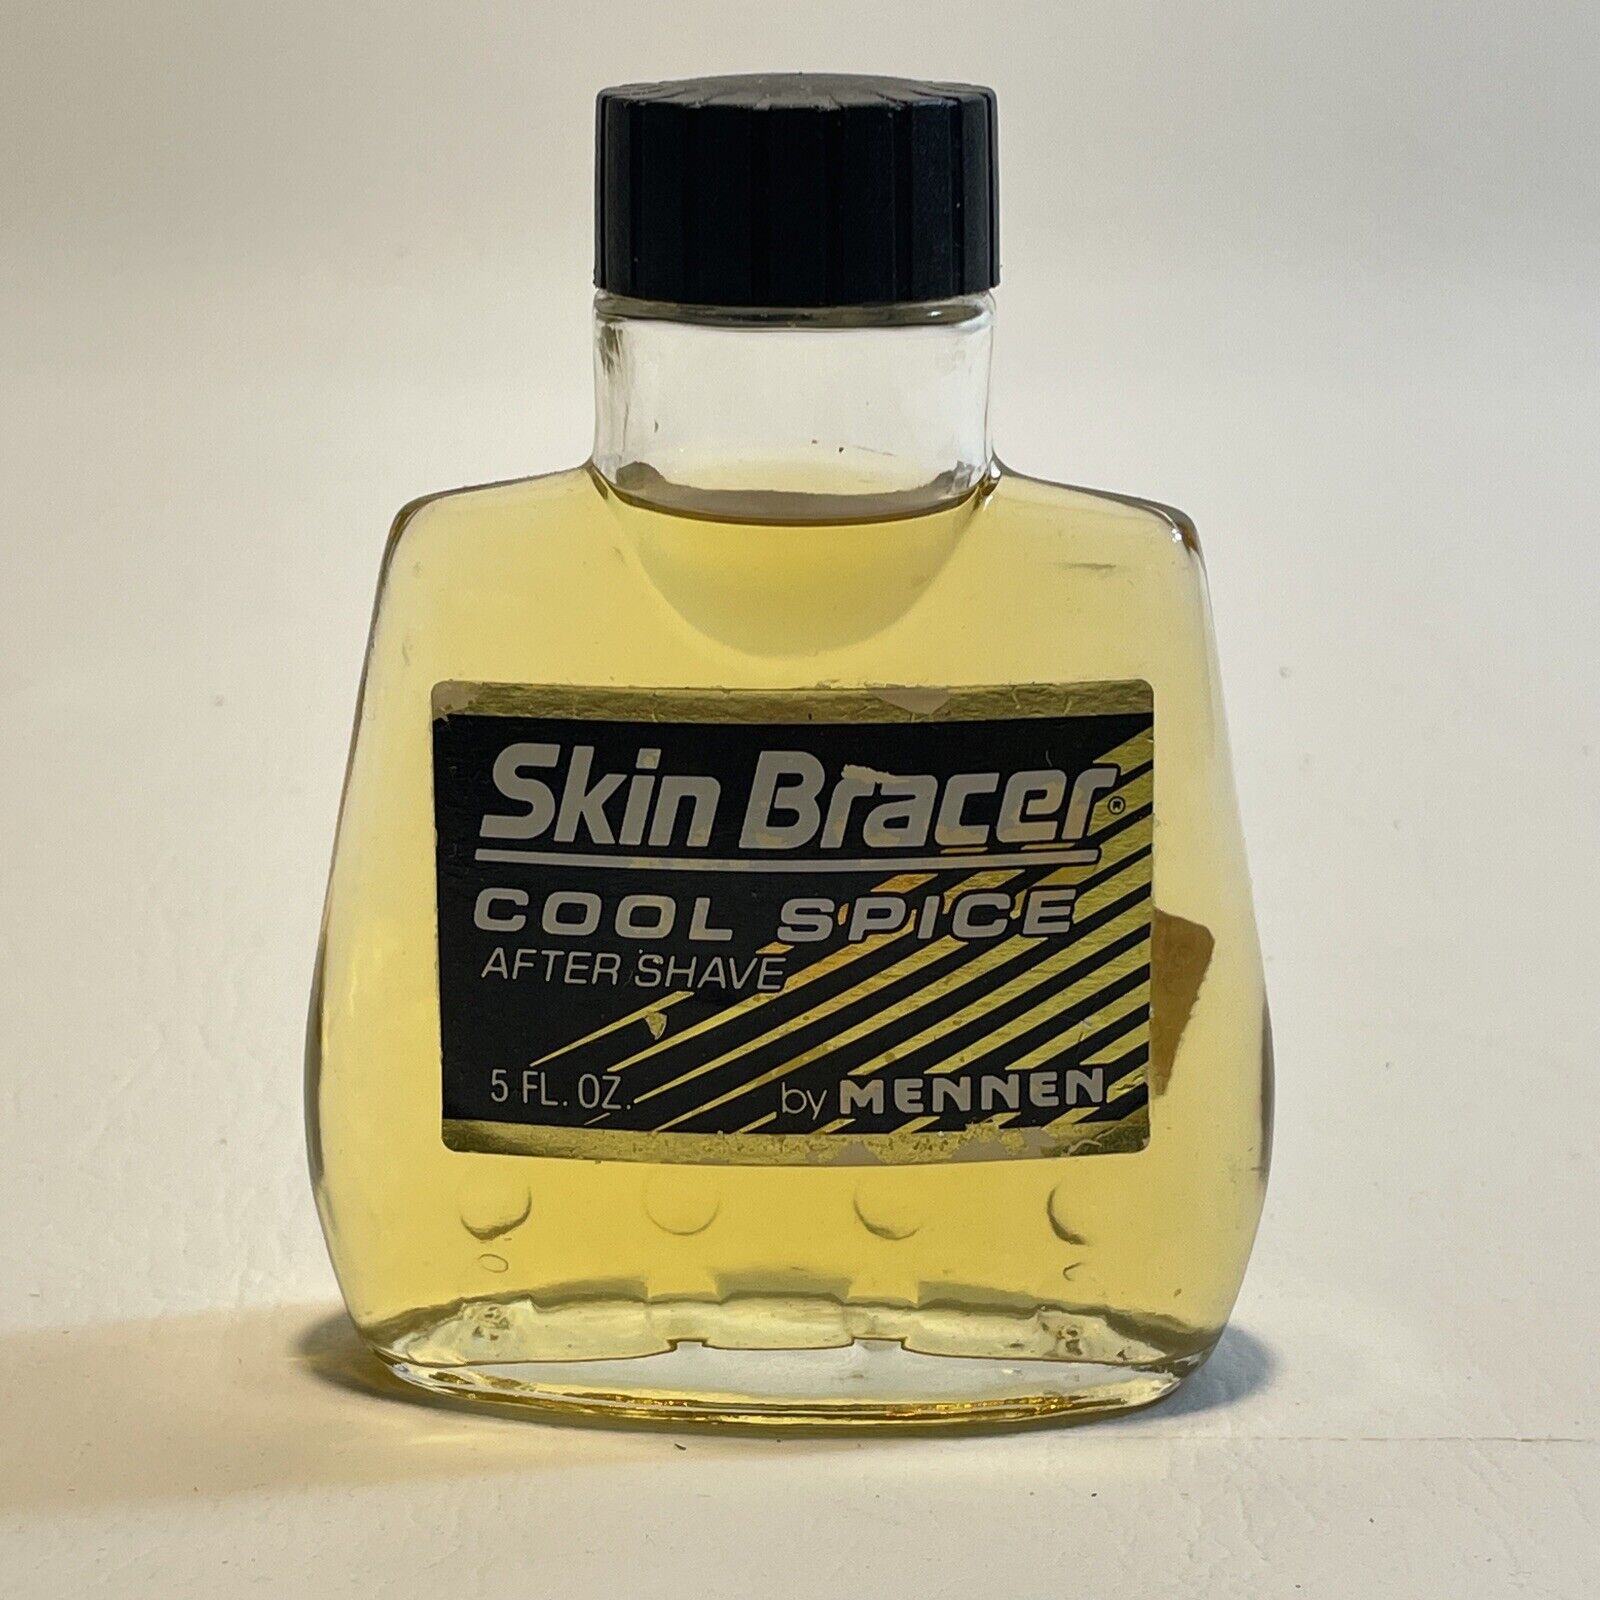 Vtg Skin Bracer Cool Spice Aftershave by Mennen 5 Fl Oz Glass Splash